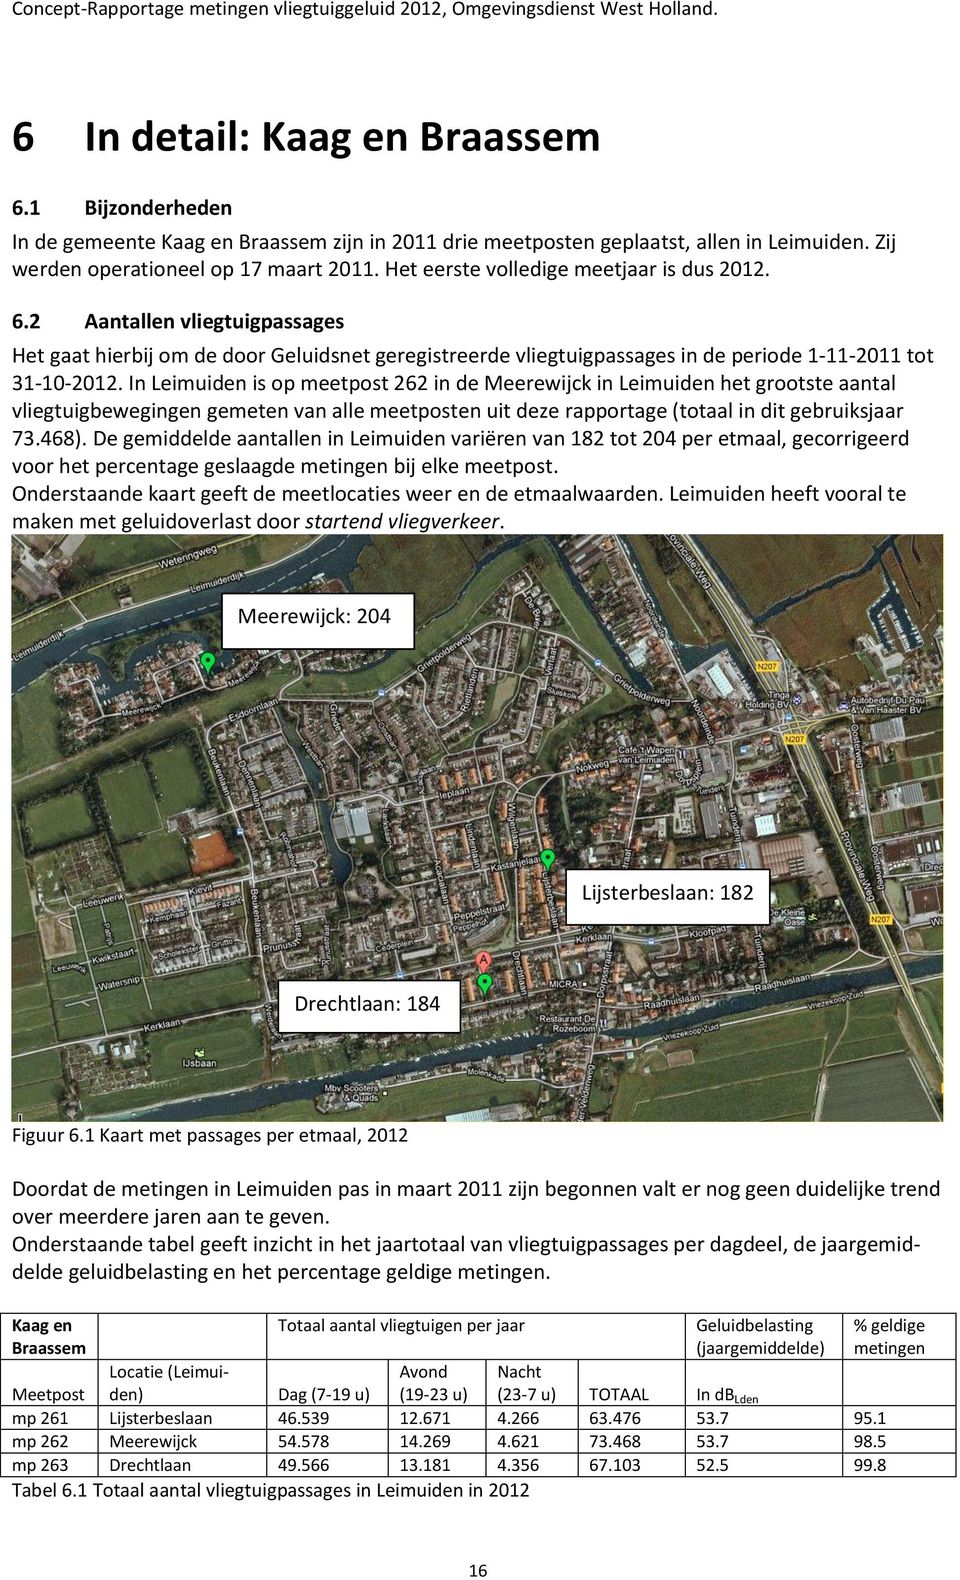 In Leimuiden is op meetpost 262 in de Meerewijck in Leimuiden het grootste aantal vliegtuigbewegingen gemeten van alle meetposten uit deze rapportage (totaal in dit gebruiksjaar 73.468).